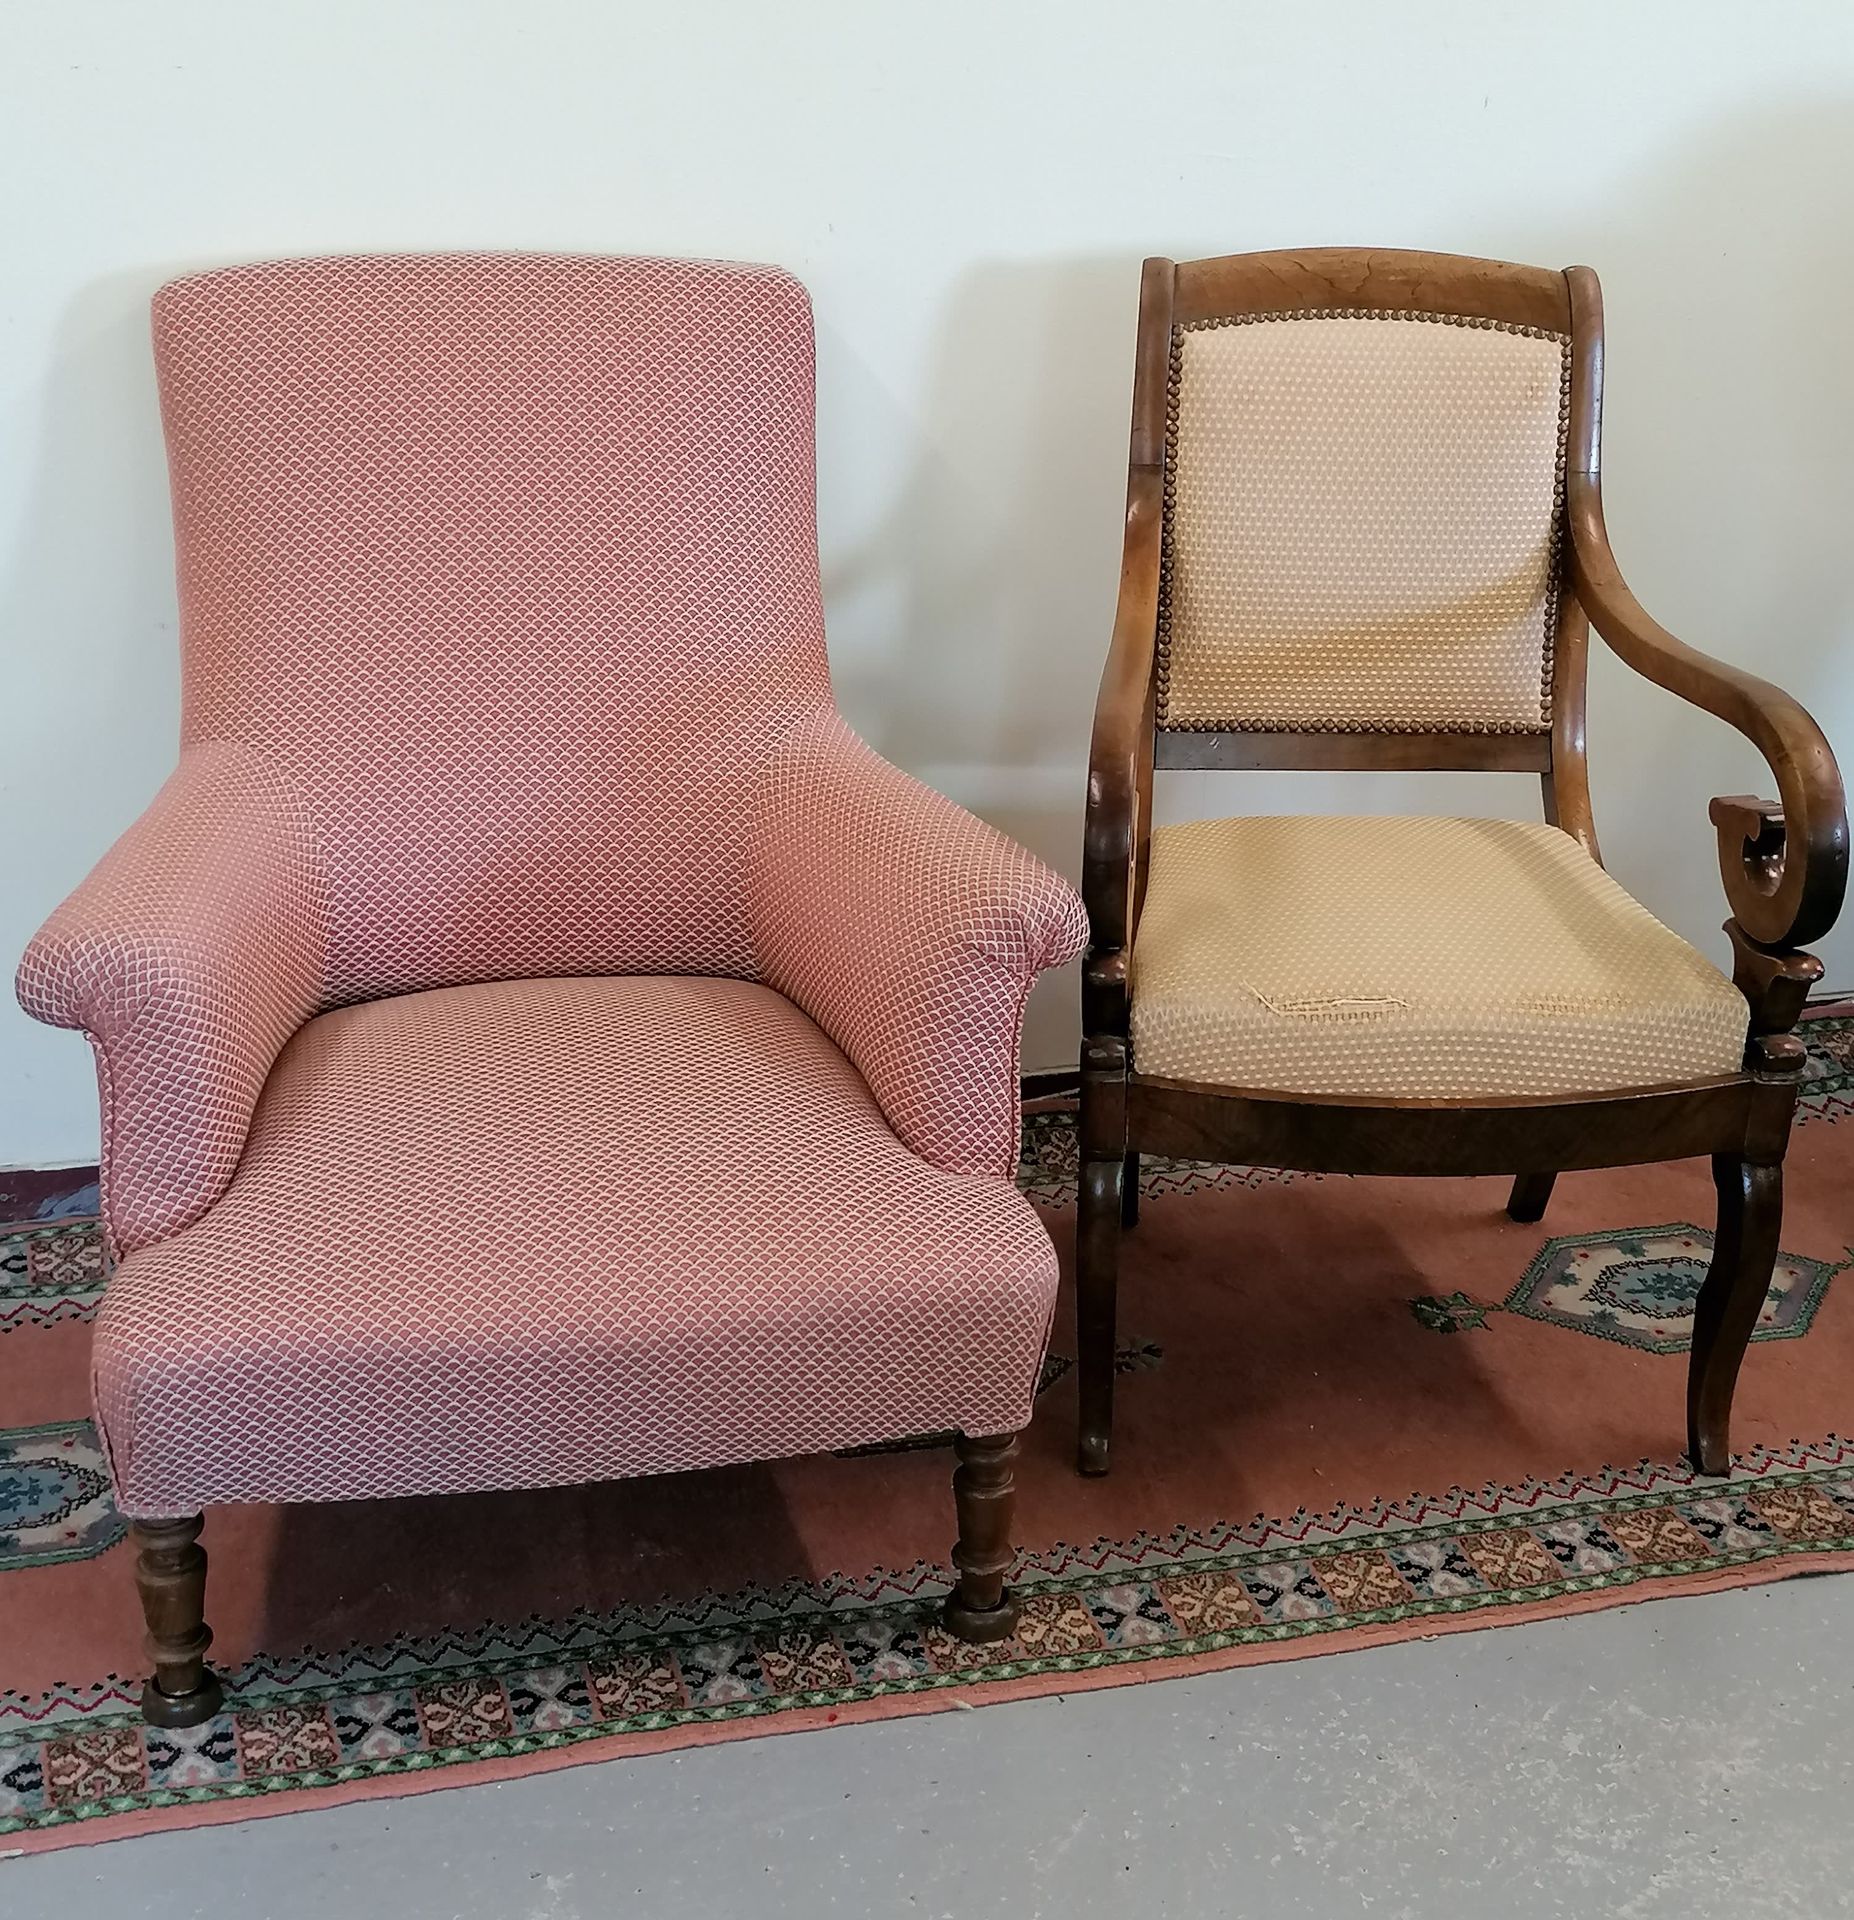 Null Un set di DUE SEDIE

Una poltrona Napoleone III ben coperta 

Una sedia da &hellip;